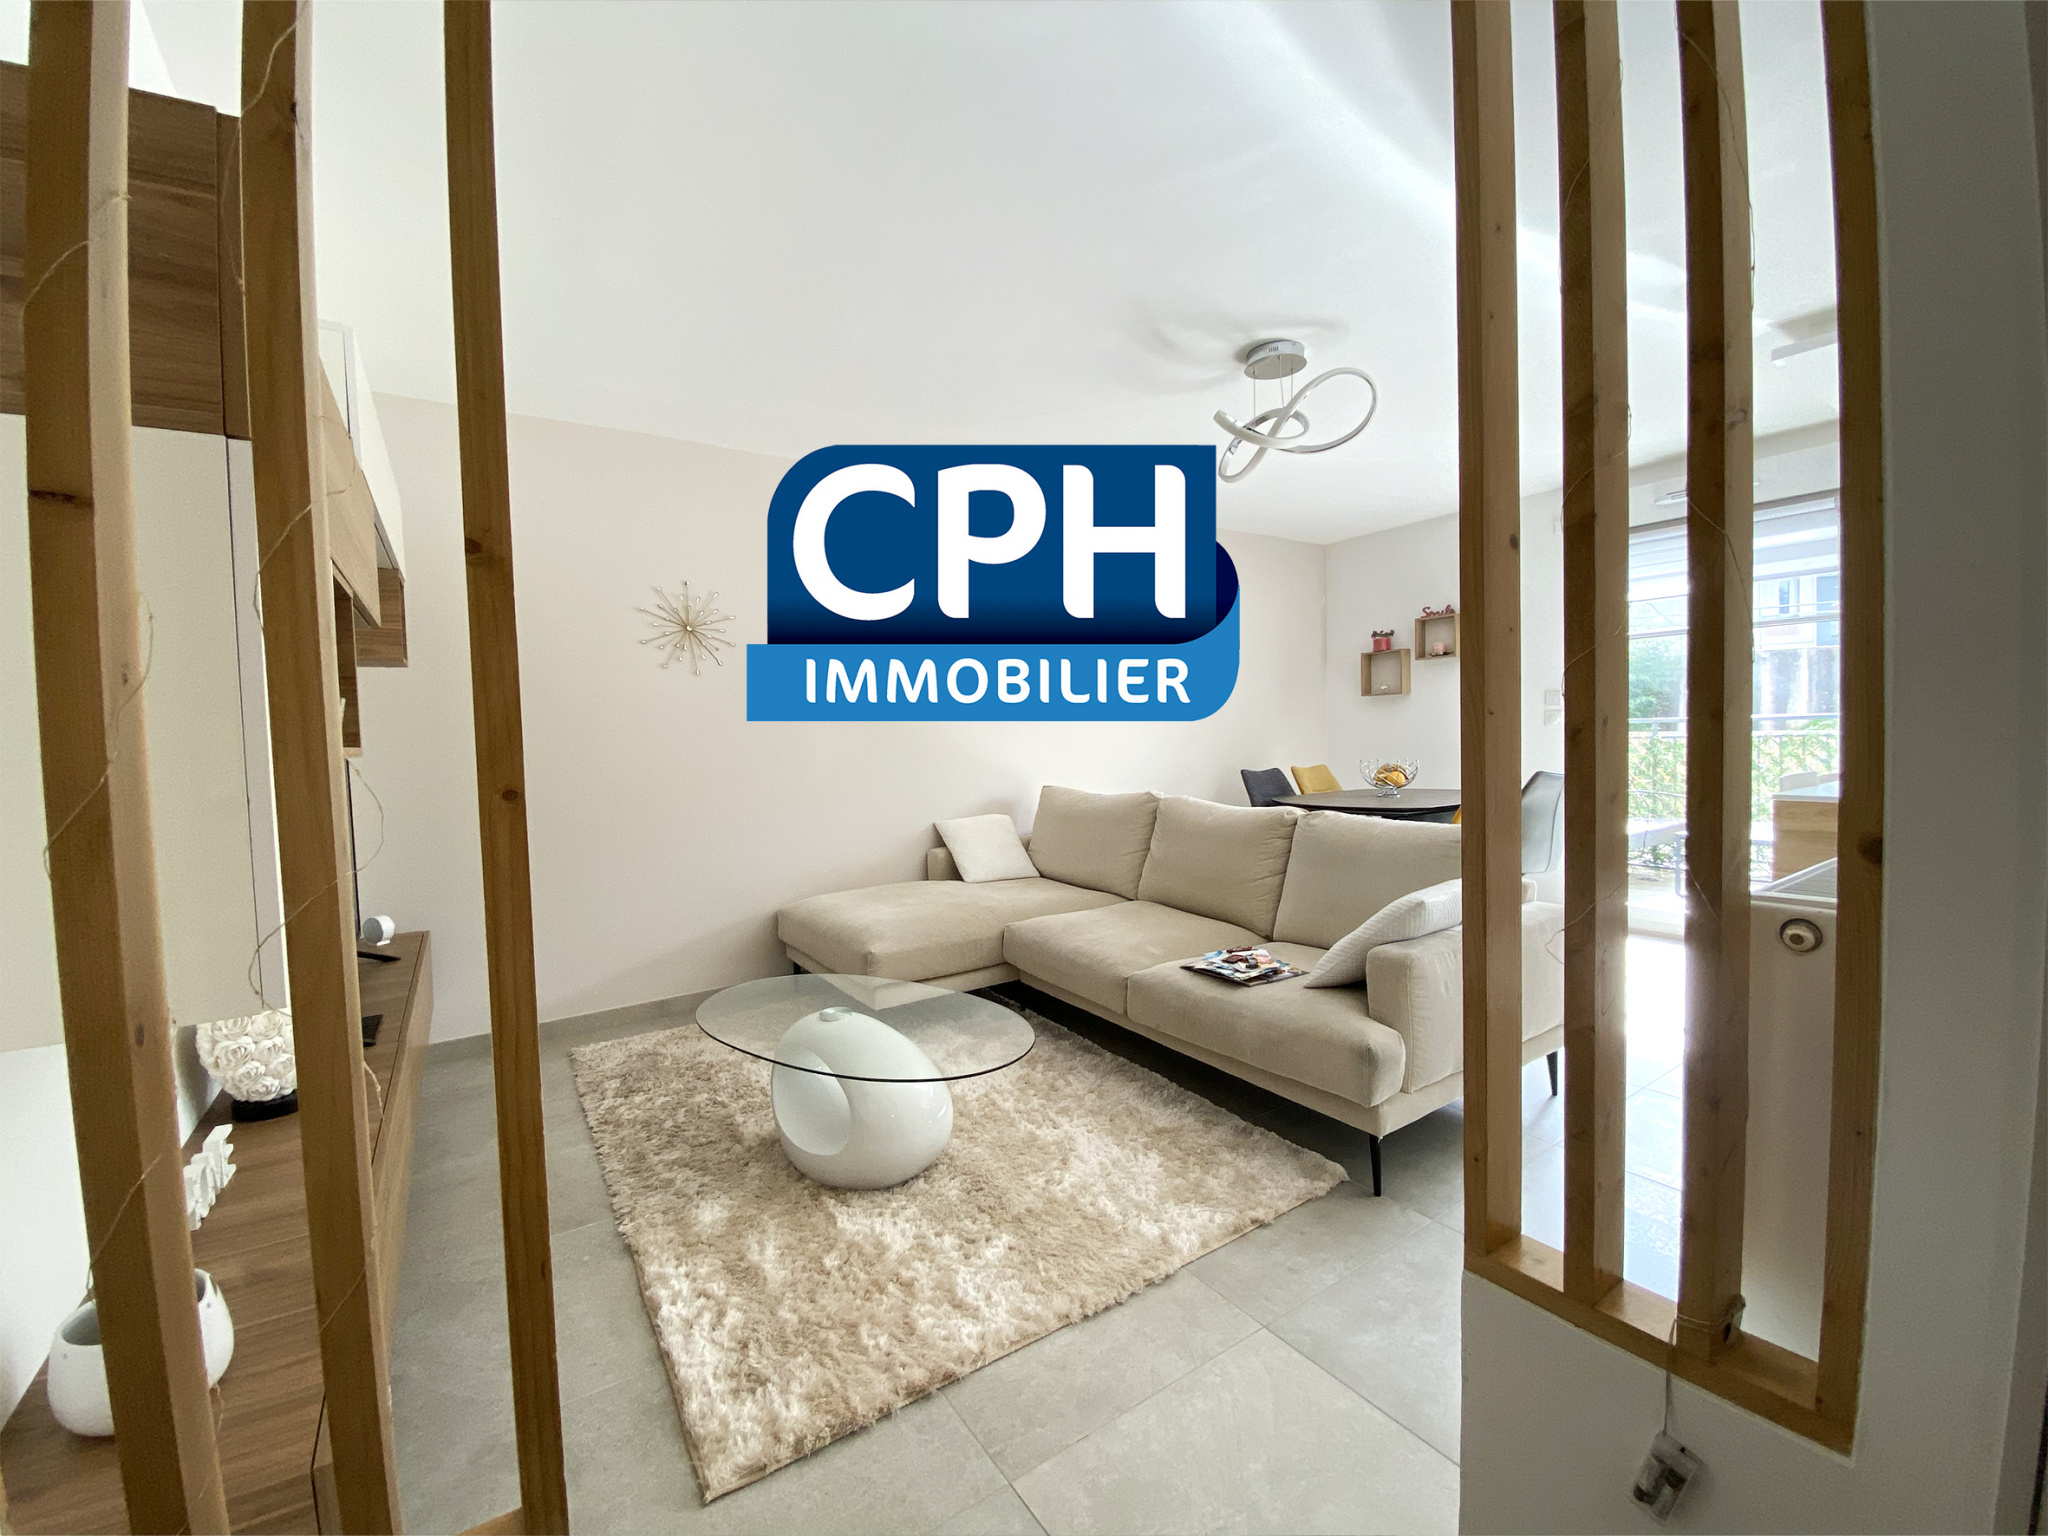 Vente Appartement 64m² 3 Pièces à Châtenay-Malabry (92290) - Cph Immobilier